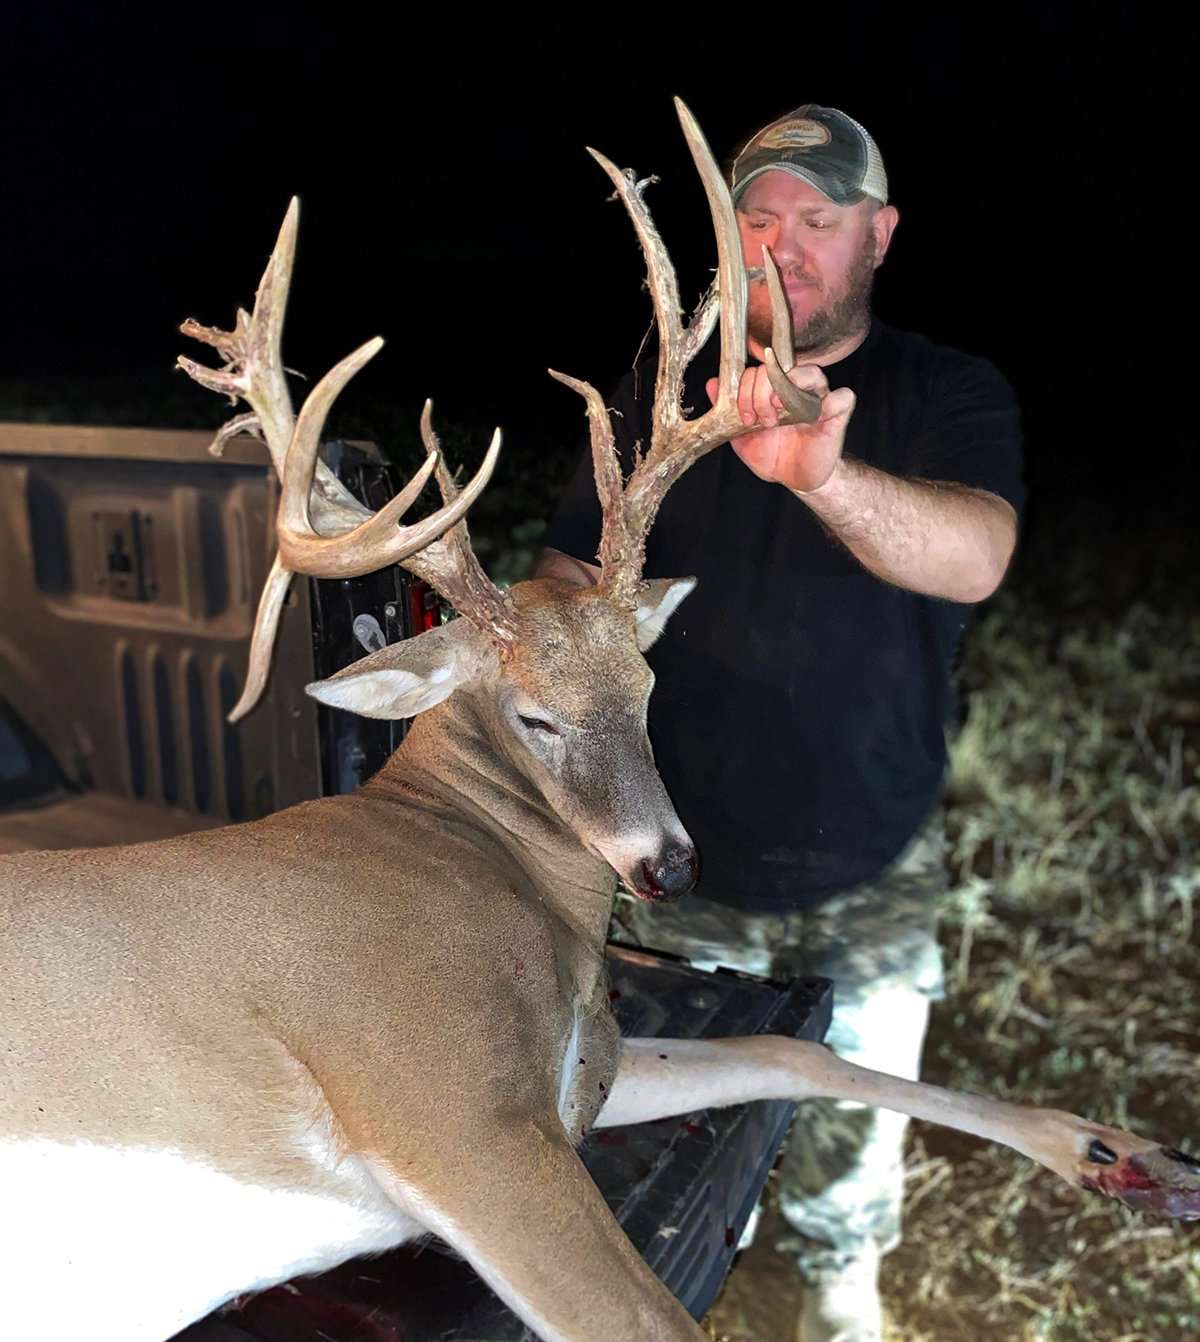 Ogle arrowed this Oklahoma deer on October 1, 2022. Image courtesy of Christopher Ogle